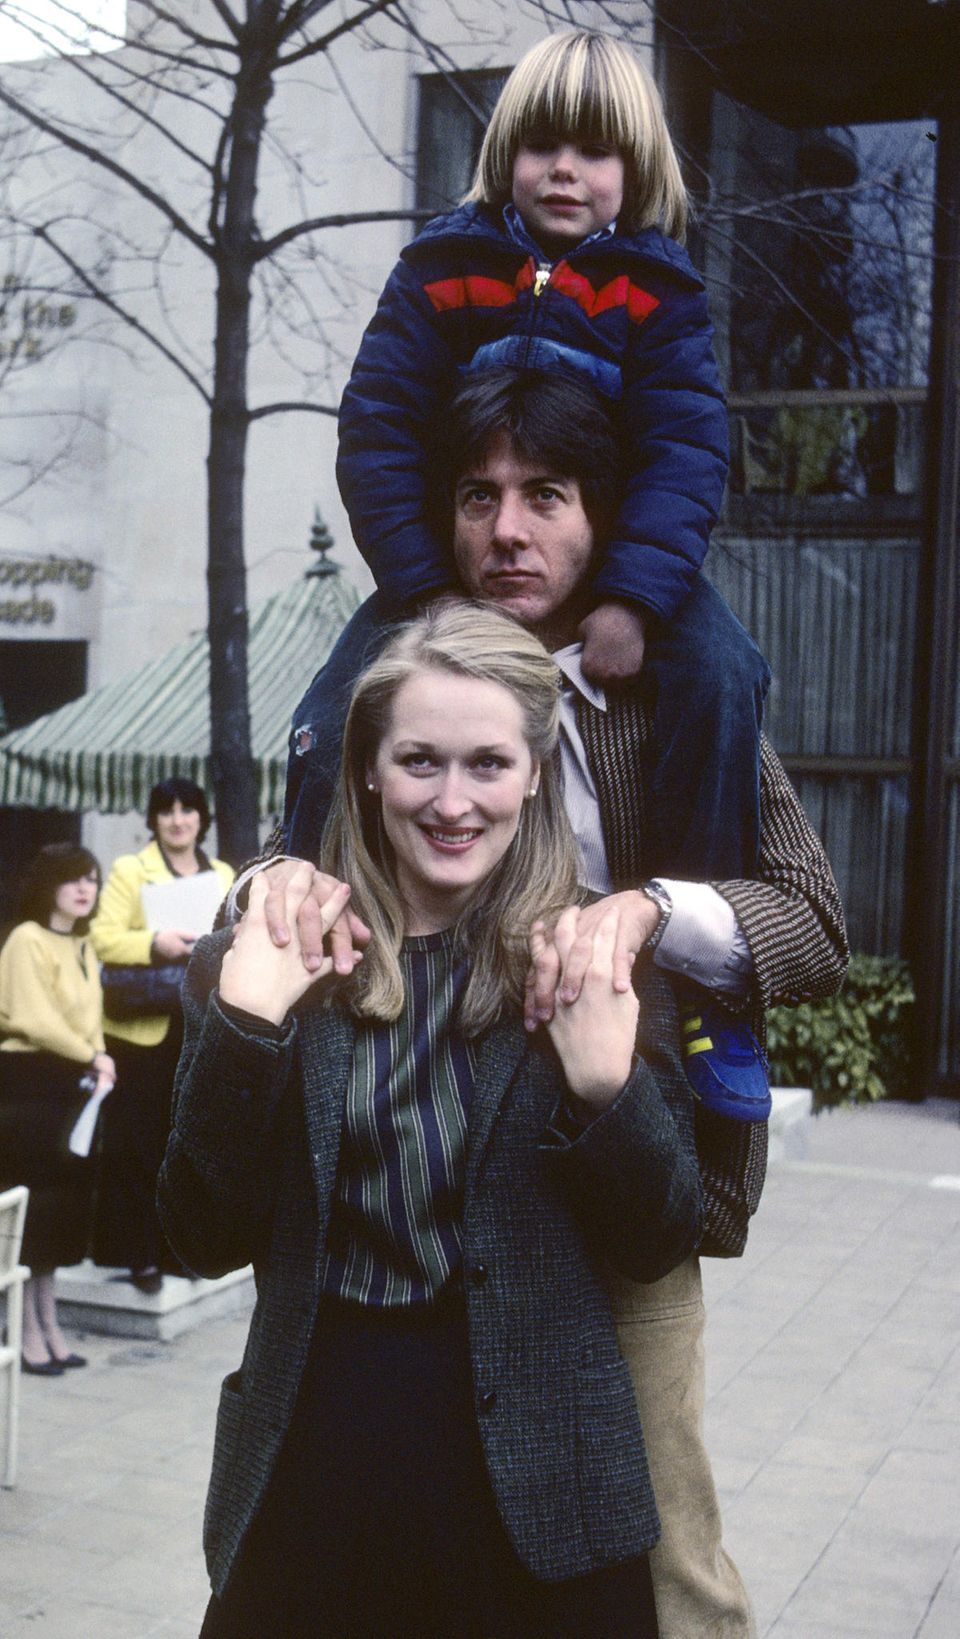 1979 dreht Meryl Streep mit Dustin Hoffman das Sorgerechtsdrama "Kramer gegen Kramer". Für ihre Darstellung wird sie 1980 mit dem Oscar als beste Nebendarstellerin ausgezeichnet.